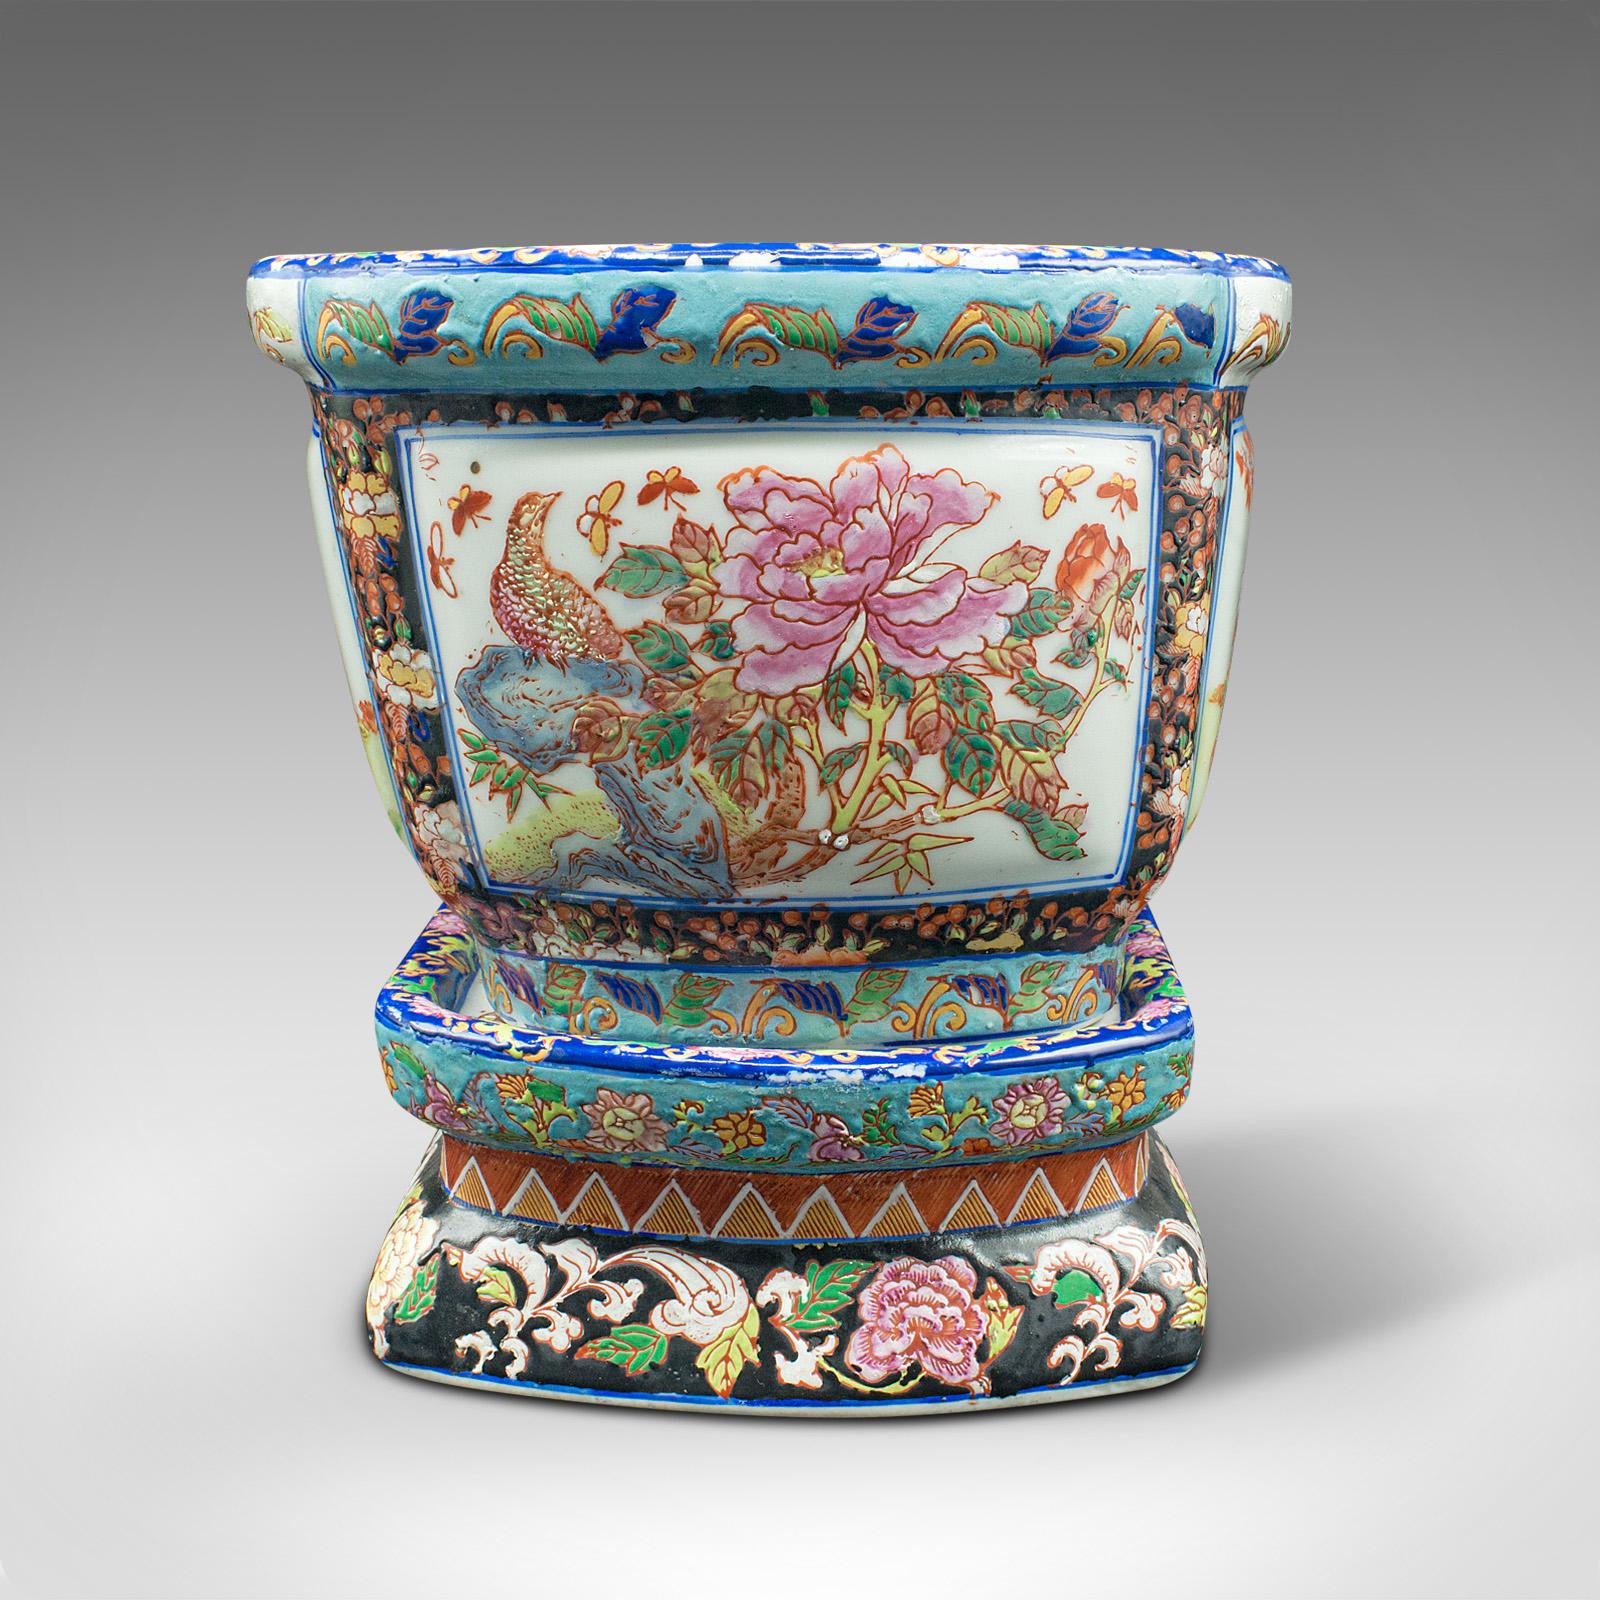 19th Century Antique Decorative Jardiniere, Chinese, Ceramic, Planter, Victorian, Circa 1900